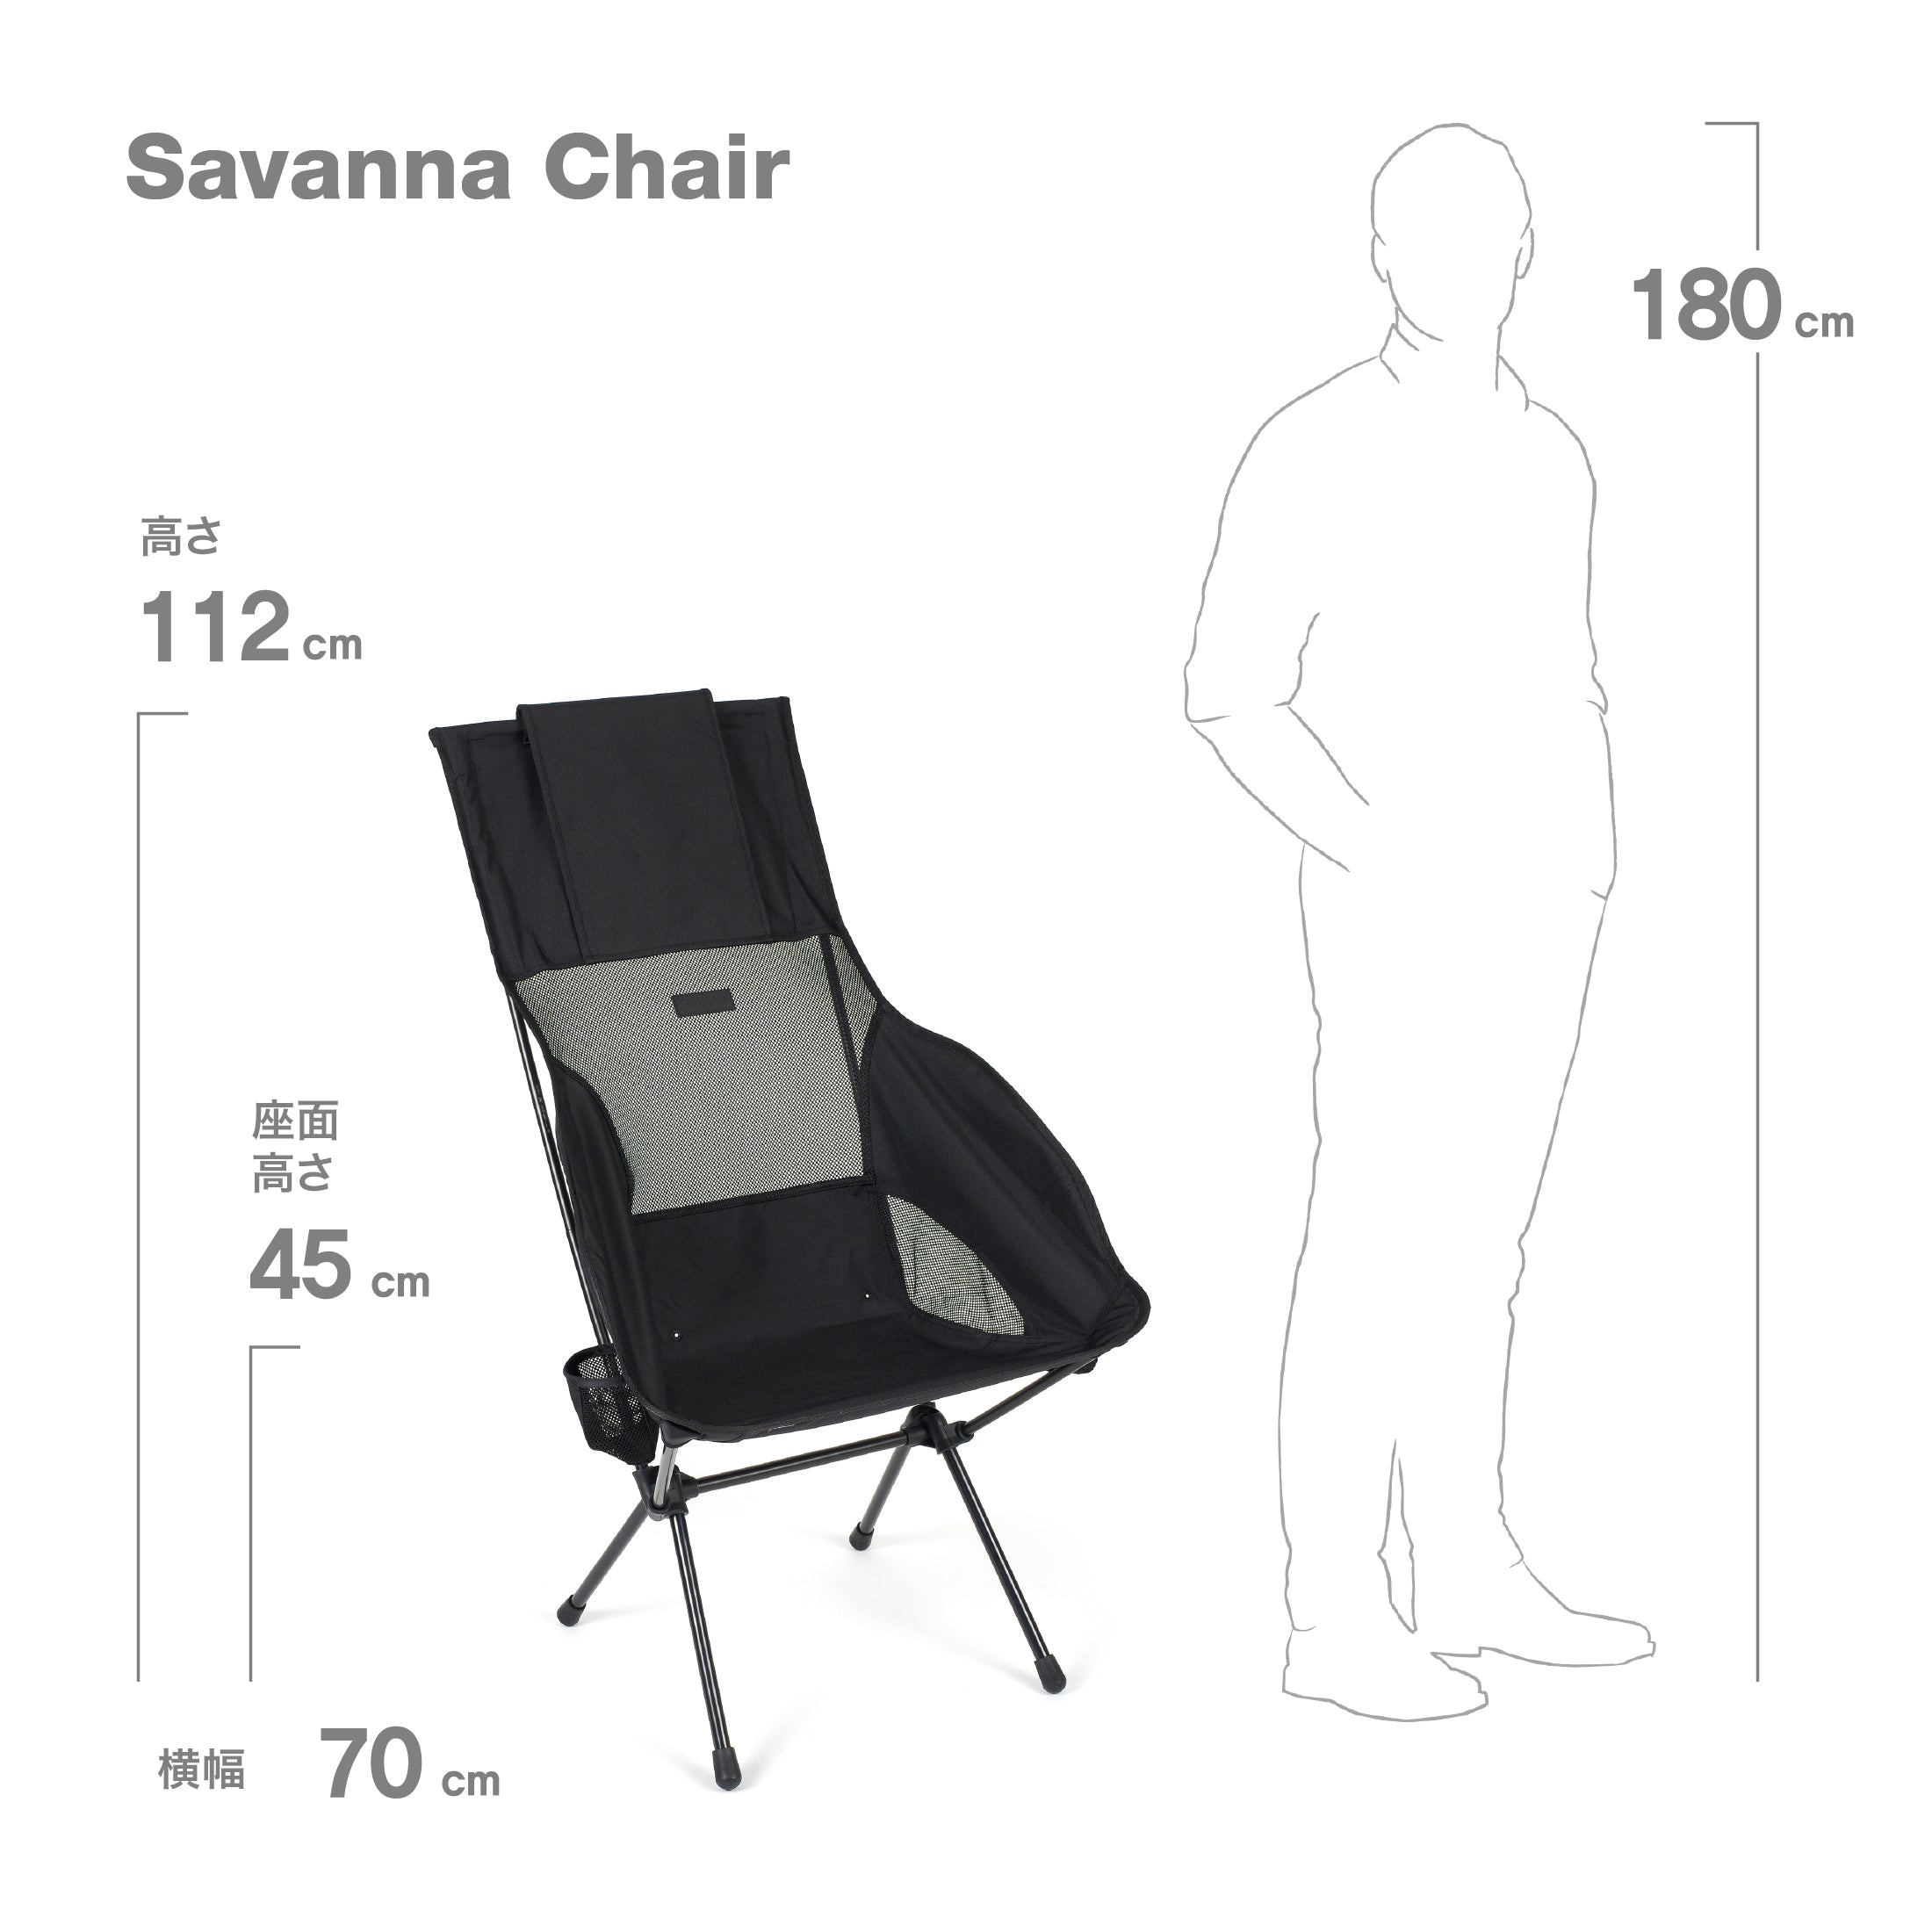 Savanna Chair - All Black